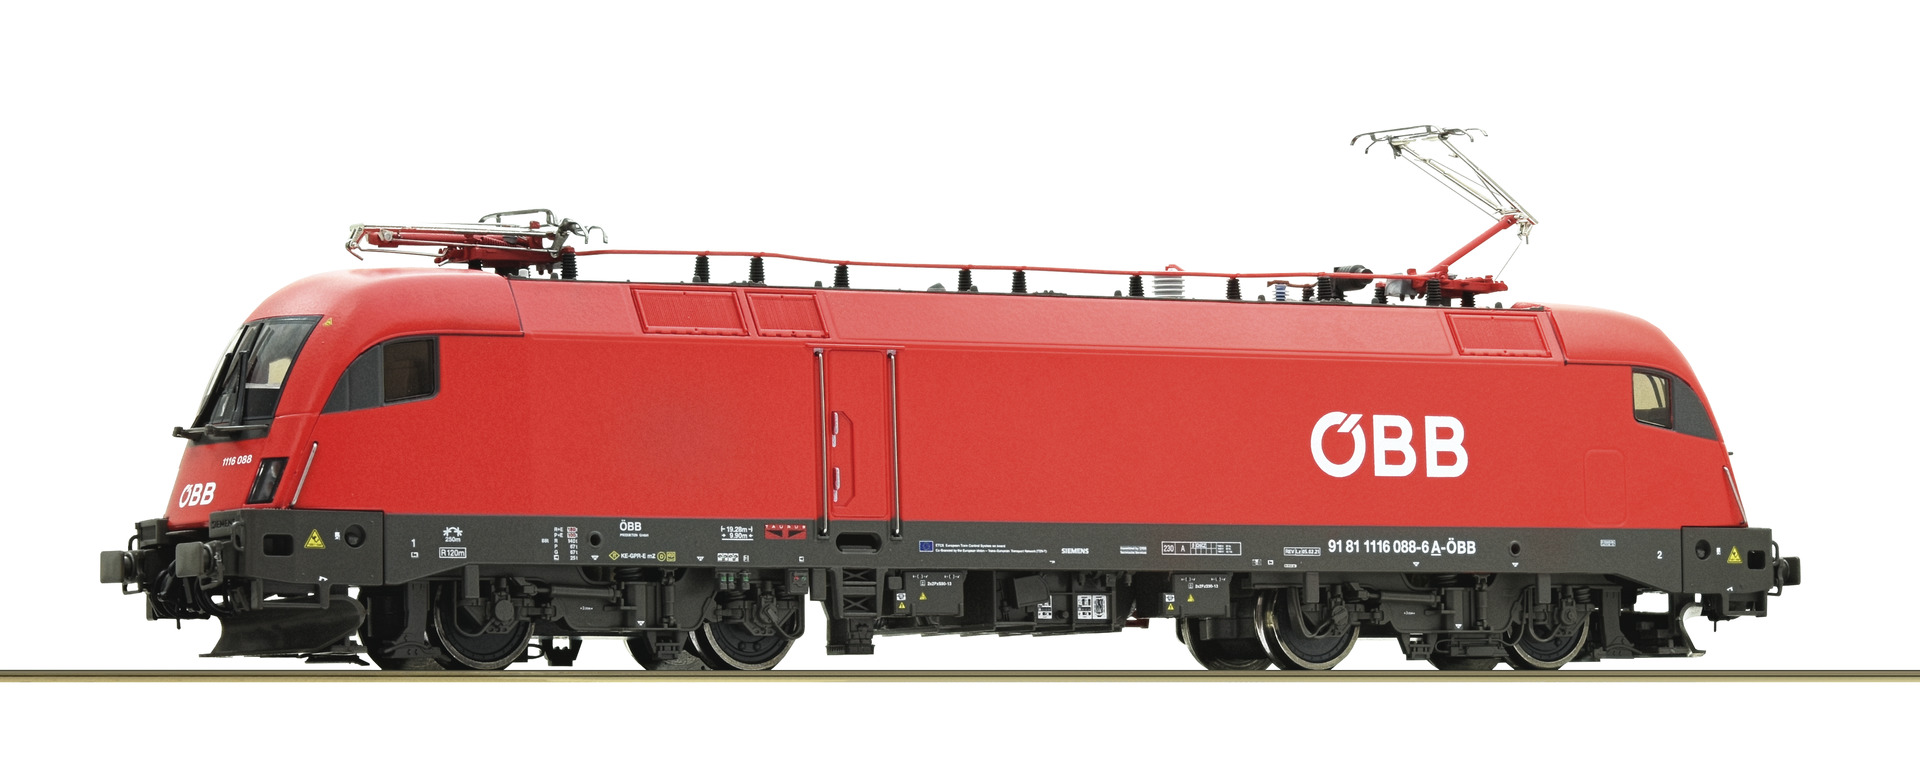 Roco 70526  Electric locomotive 1116 088-6, ÖBB